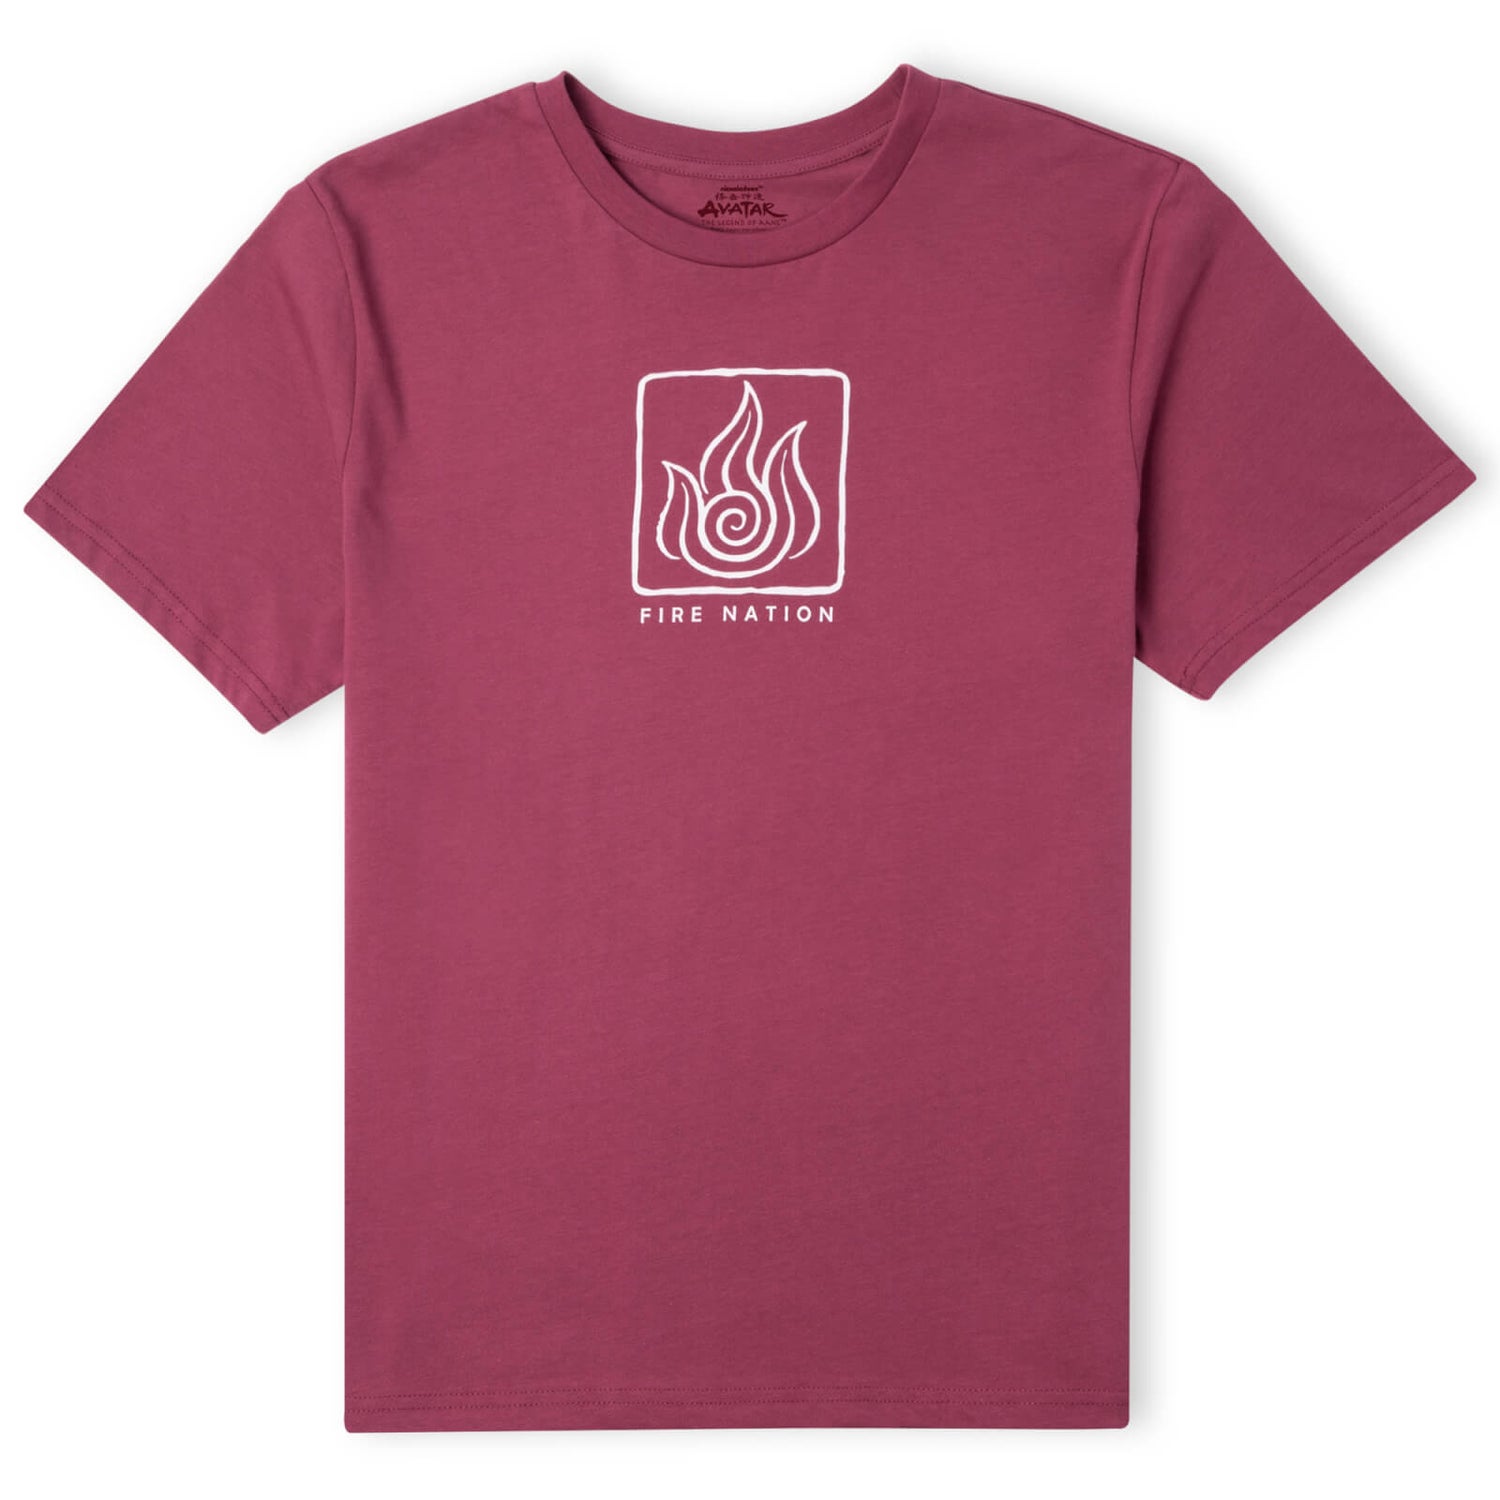 Avatar Fire Nation T-Shirt Unisexe - Bordeaux